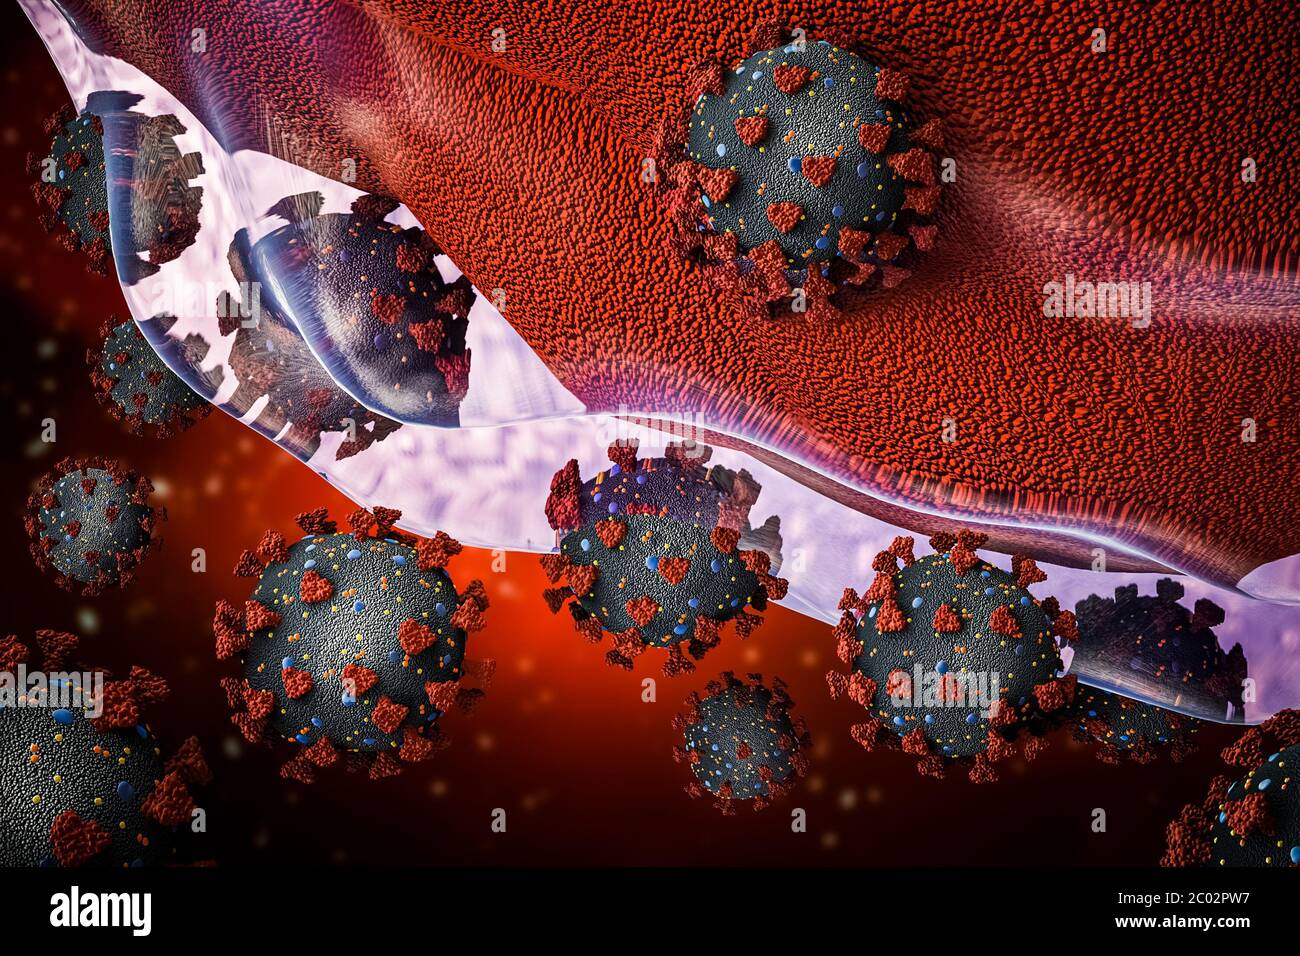 Groupe de coronavirus ou de cellules de virus covid 19 envahissant ou infectant une illustration de rendu 3D cellulaire. Microbiologie, médecine, biomédical, biologie, viro Banque D'Images